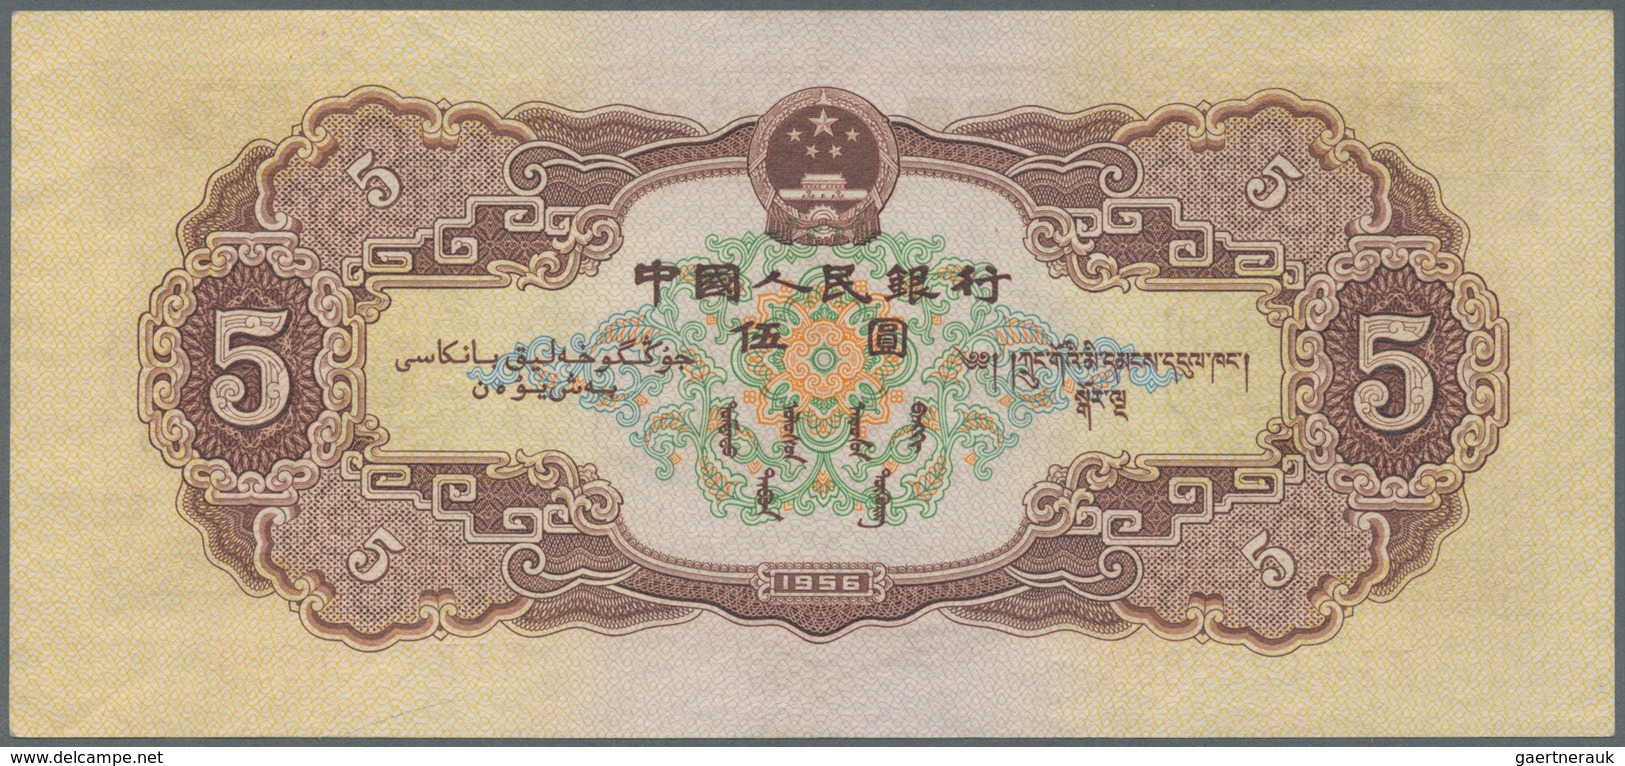 01302 China: 5 Yuan 1956 P. 872, Light Center Bend But Crisp Original Paper And Colors, Original Note With - Cina